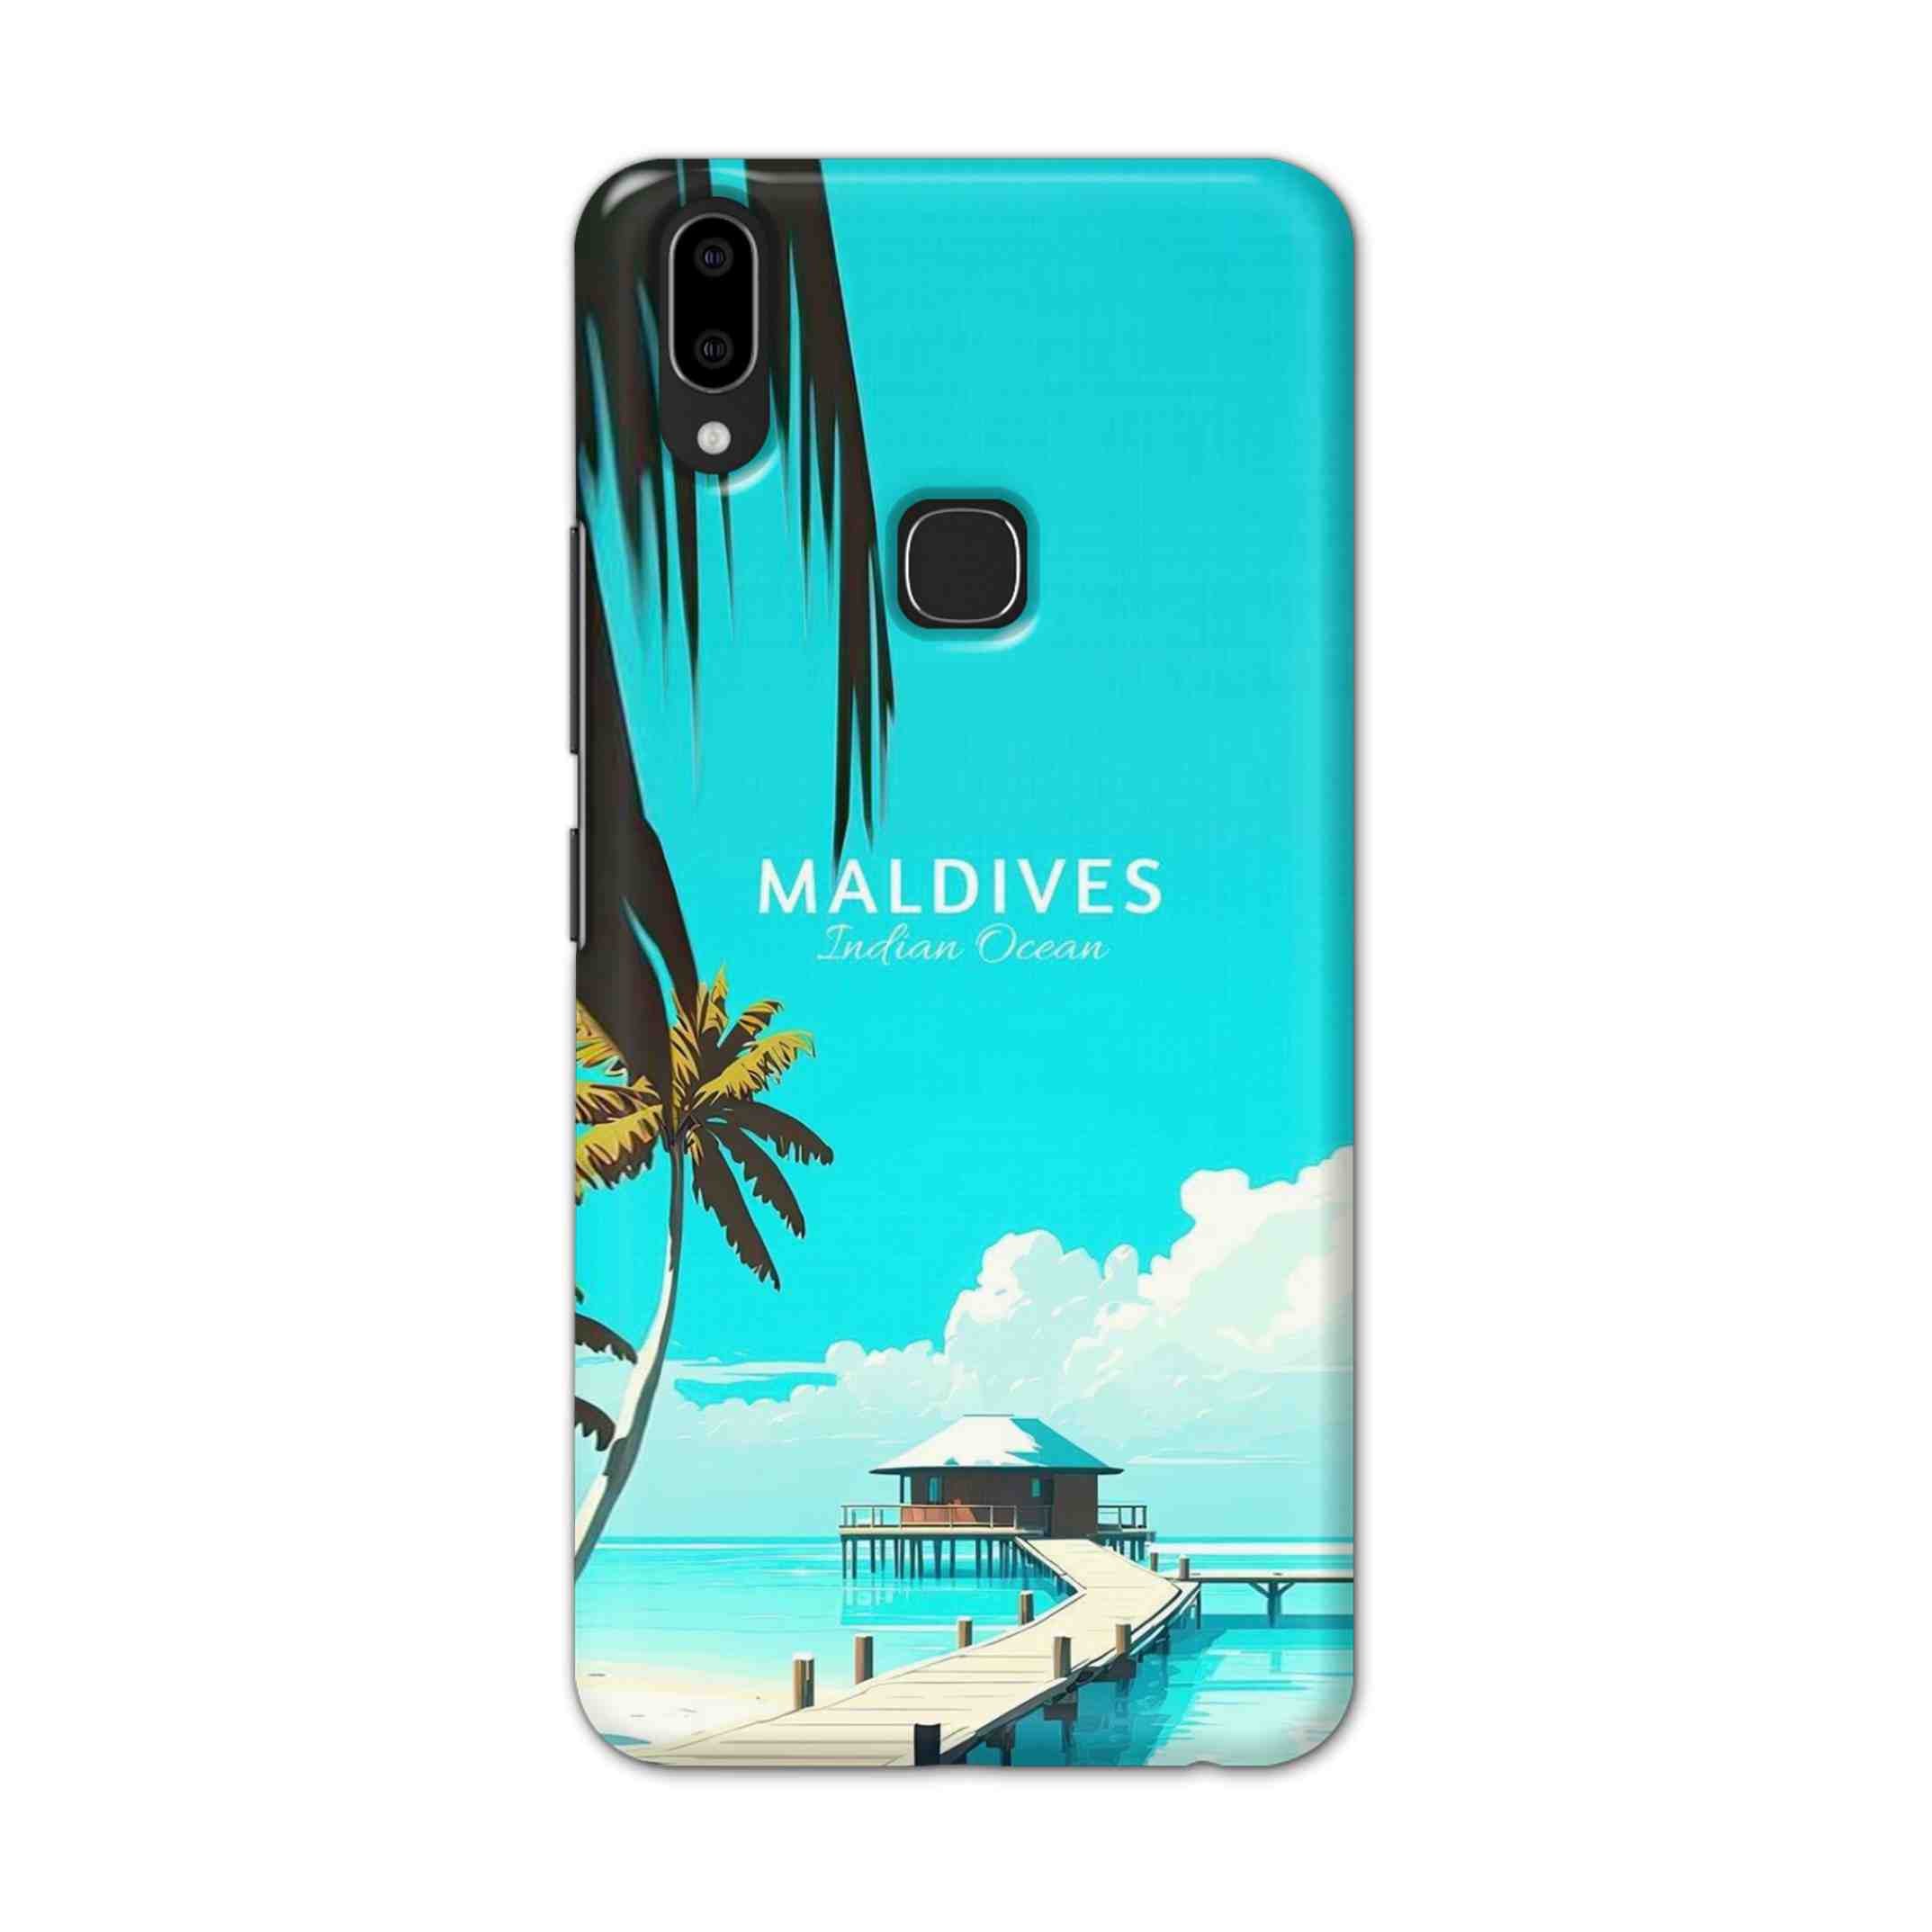 Buy Maldives Hard Back Mobile Phone Case Cover For Vivo V9 / V9 Youth Online